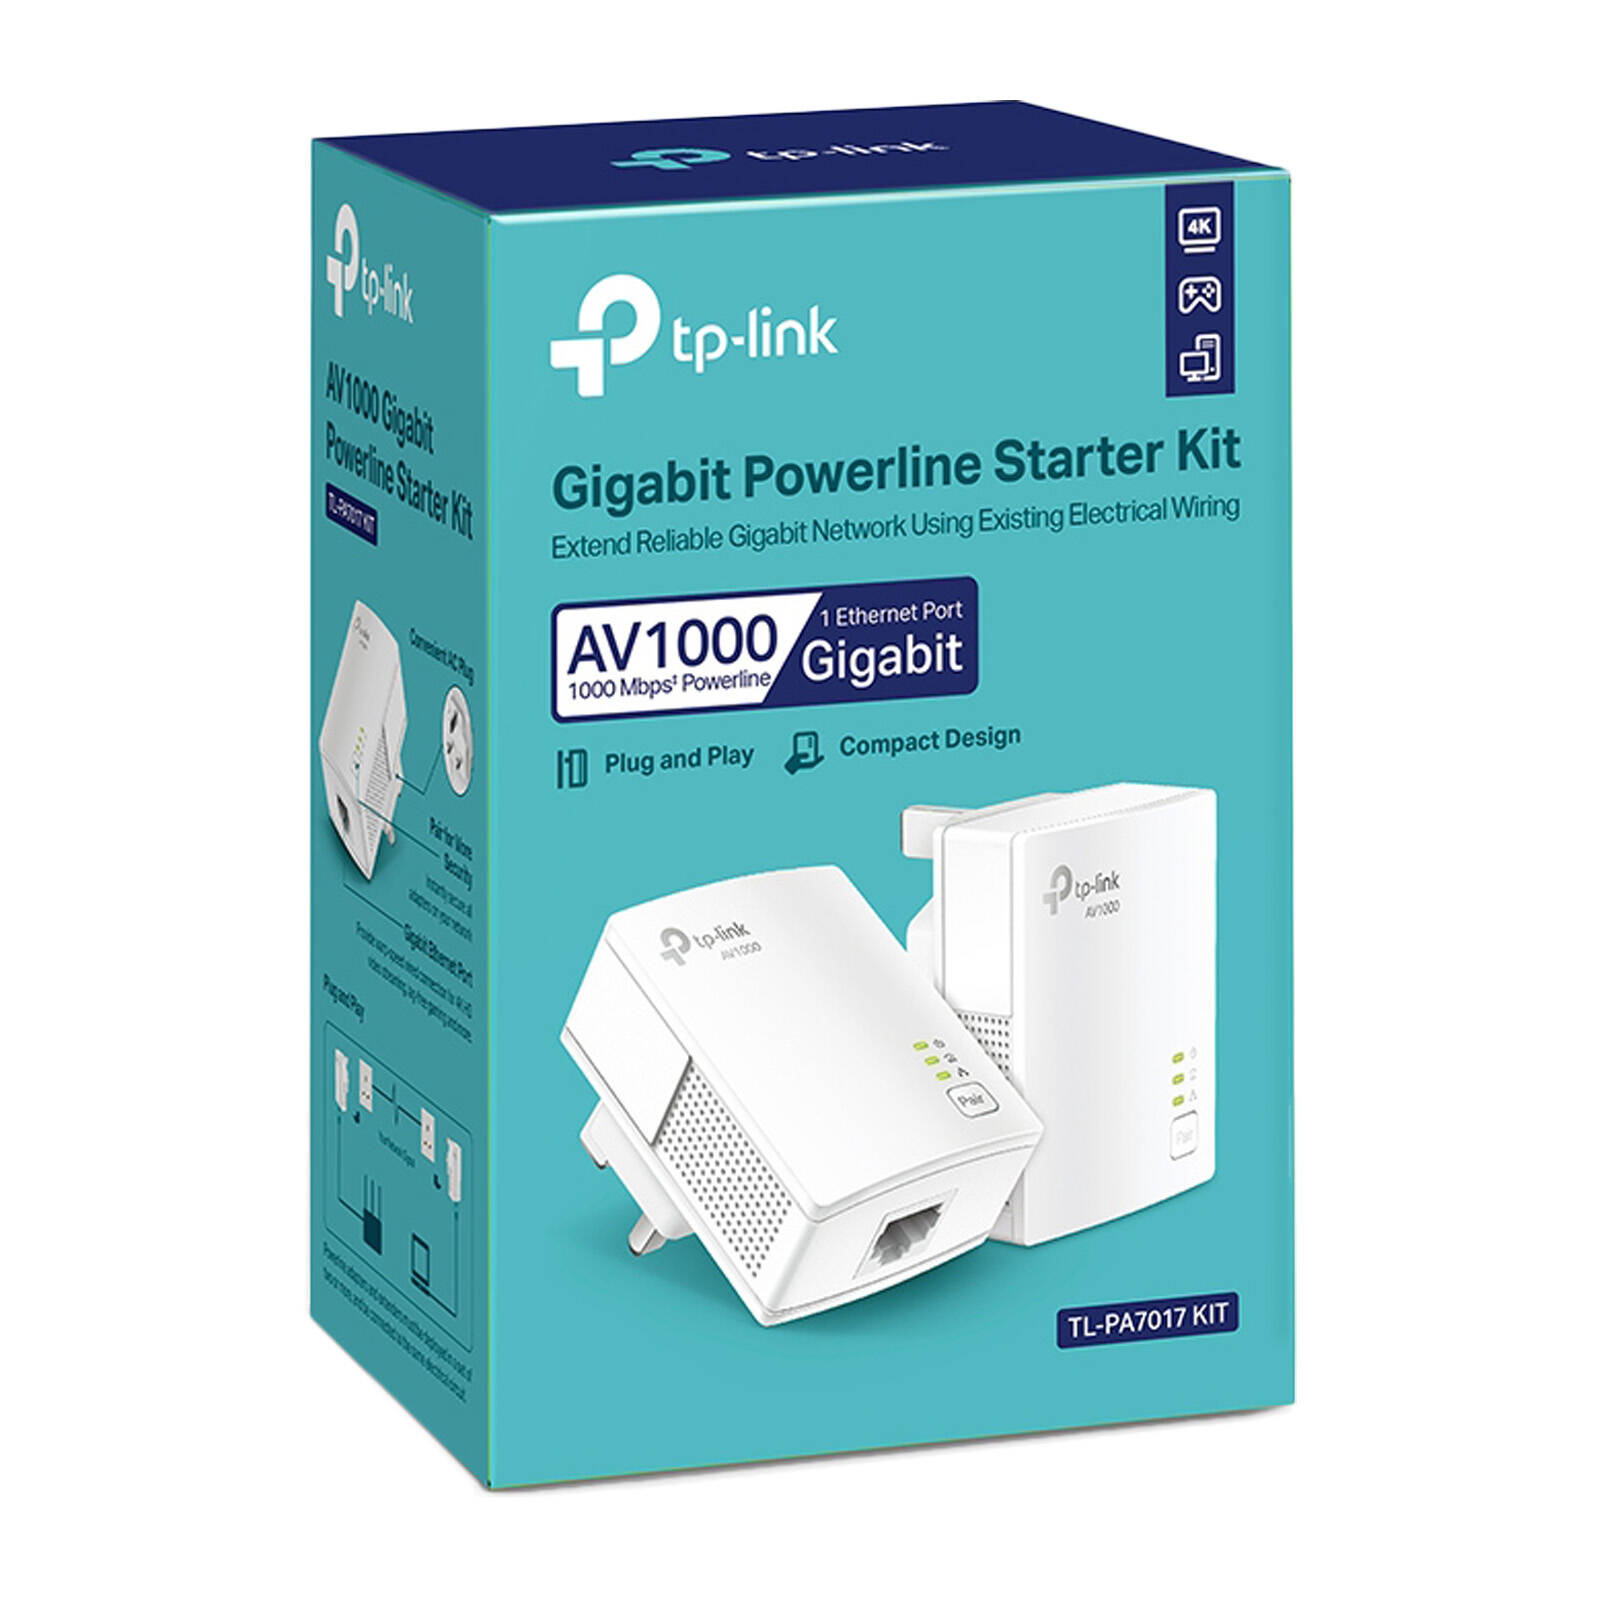 TP-Link (TL-PA7017 KIT) AV1000 Gigabit Powerline Home Plug Adapter Starter Kit